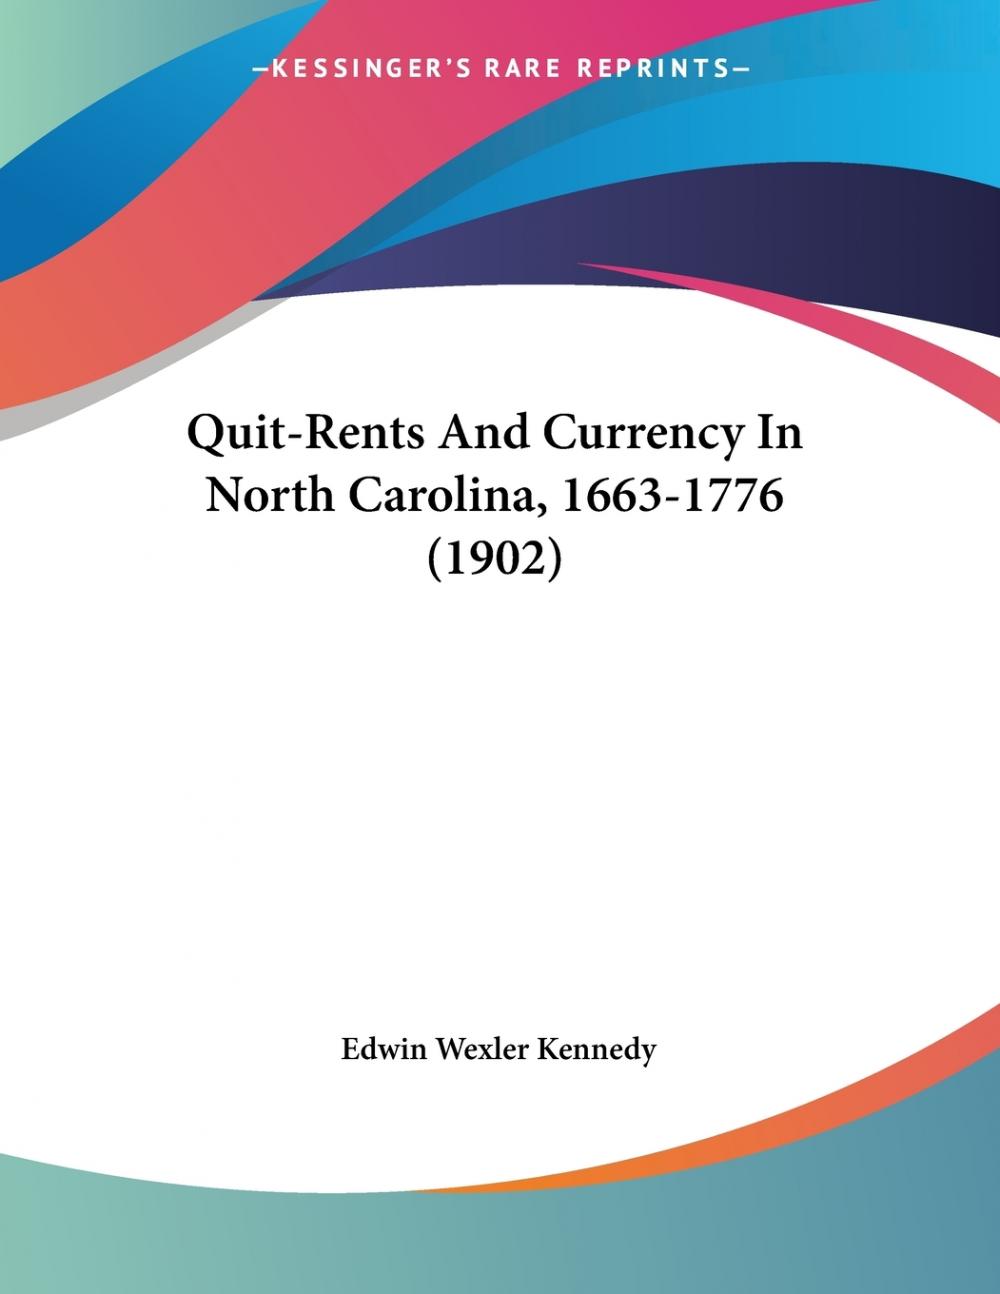 预售按需印刷 Quit-Rents And Currency In North Carolina 1663-1776(1902)